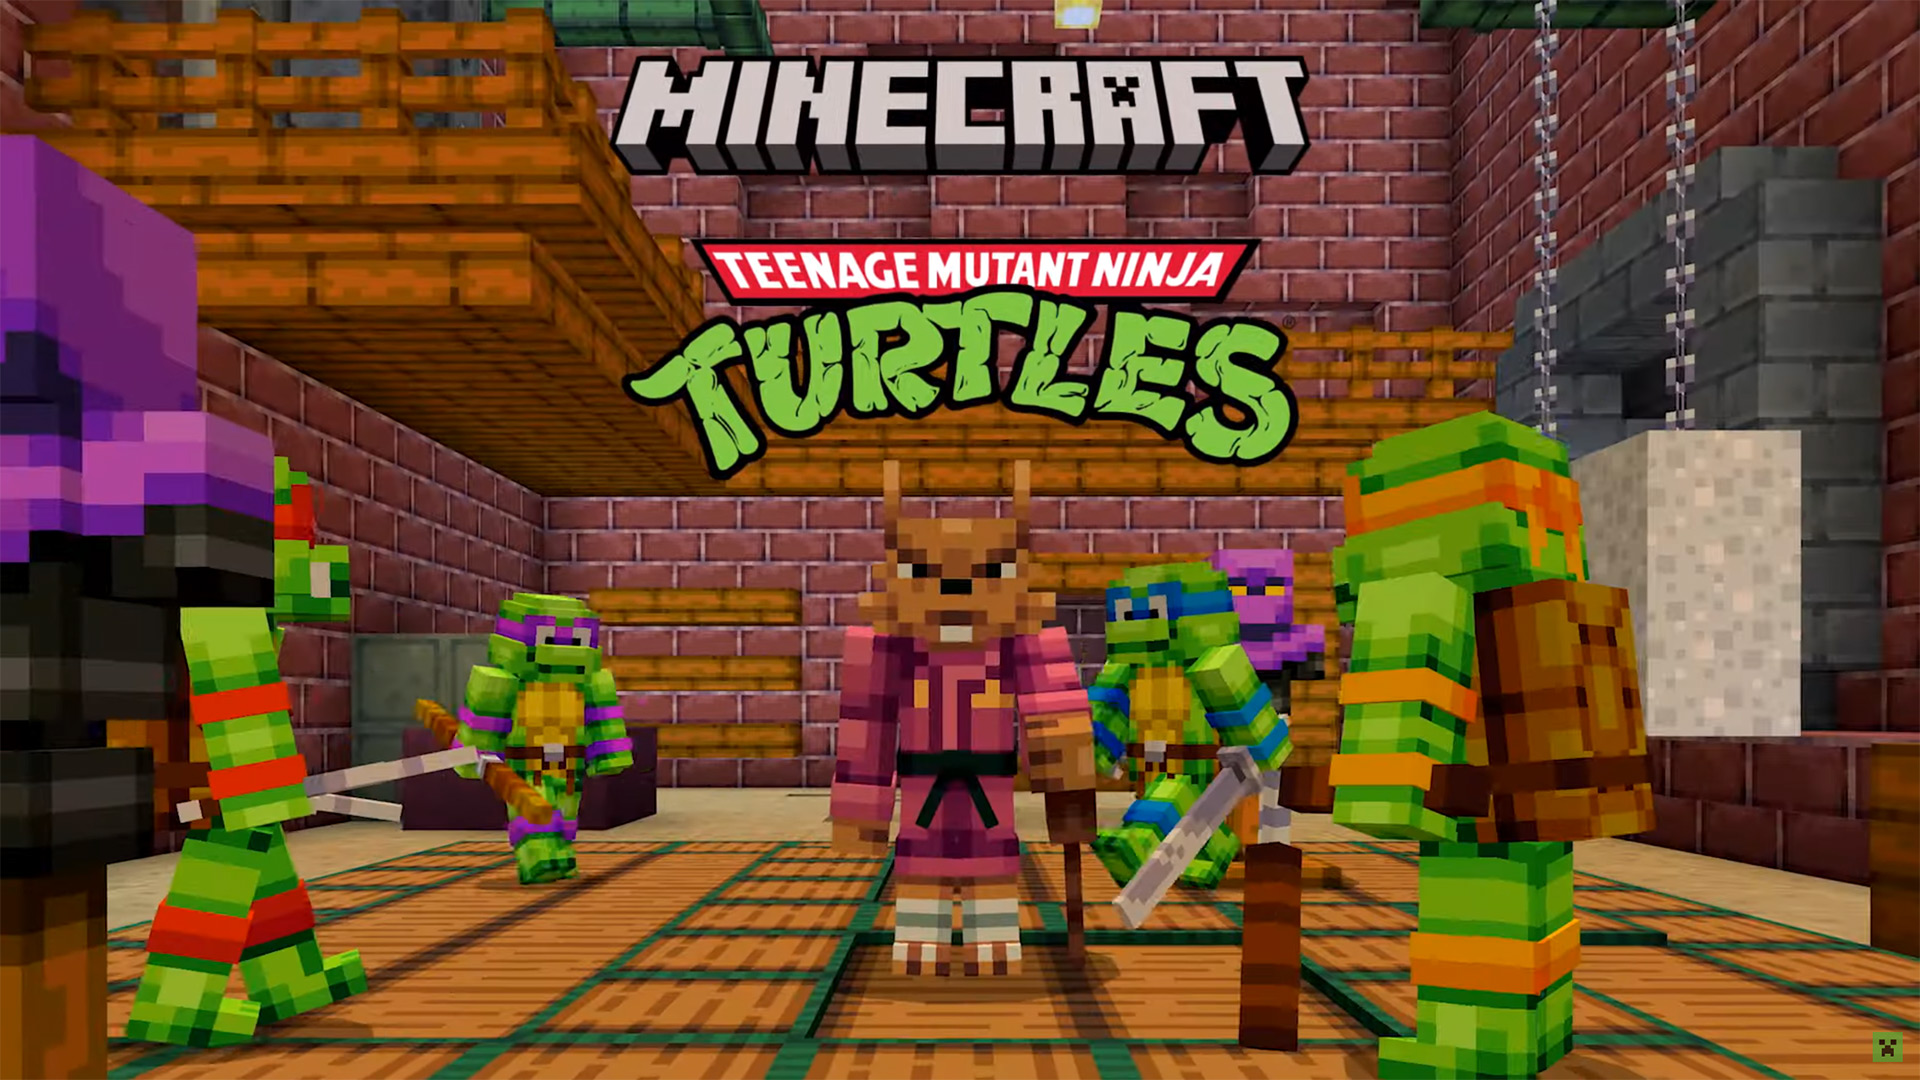 A Teenage Mutant Ninja Turtles DLC has invaded Minecraft